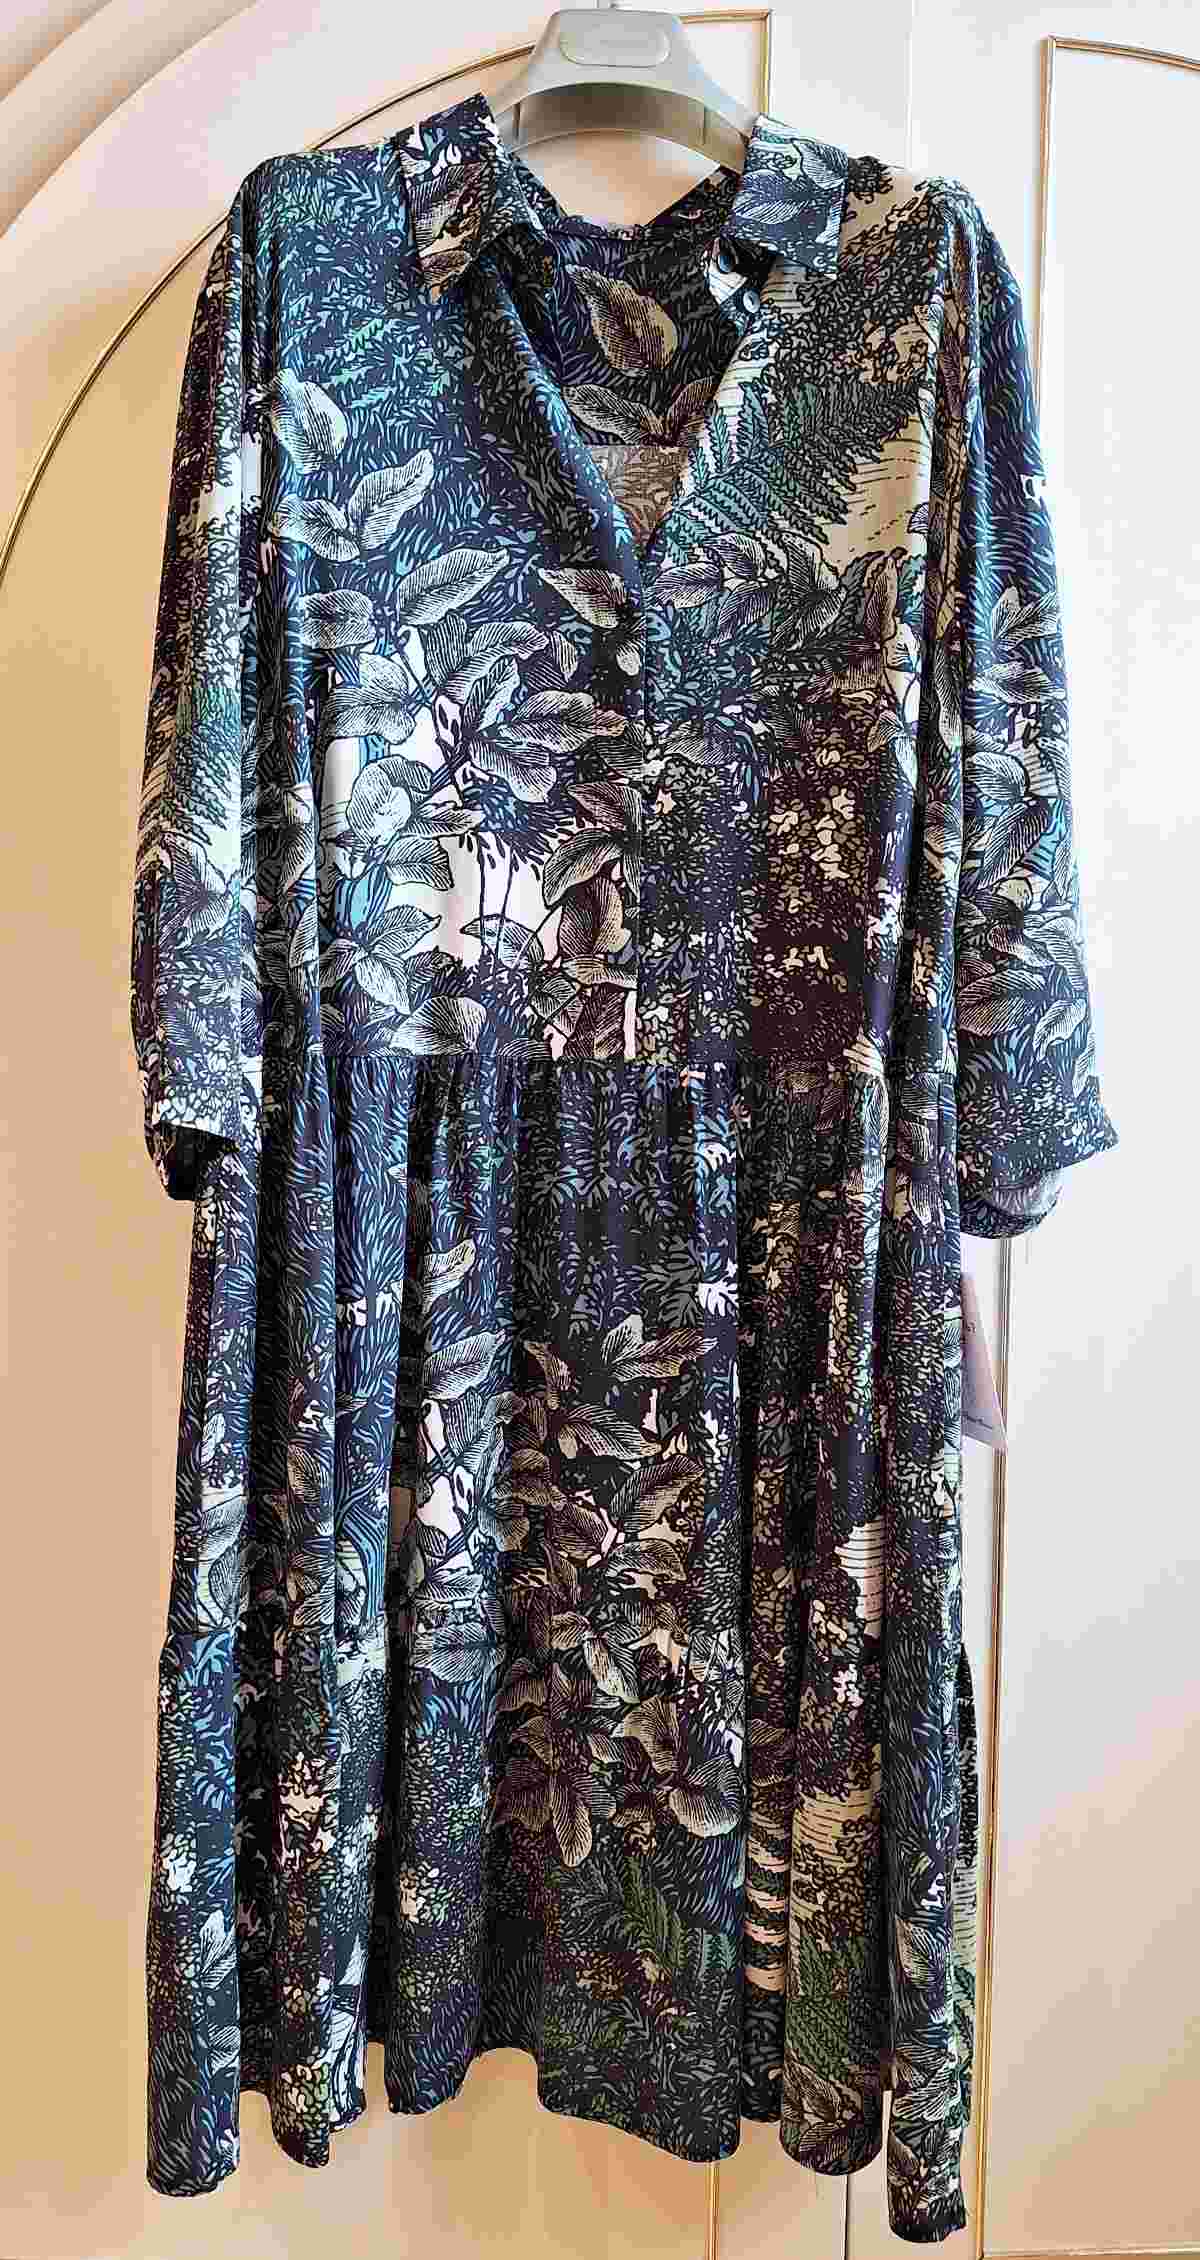 Peter Hahn Kleid, florales Motiv, Größe 46, aus Viskose, mit Einstecktaschen, Secondhand aber neu, Frontalansicht.